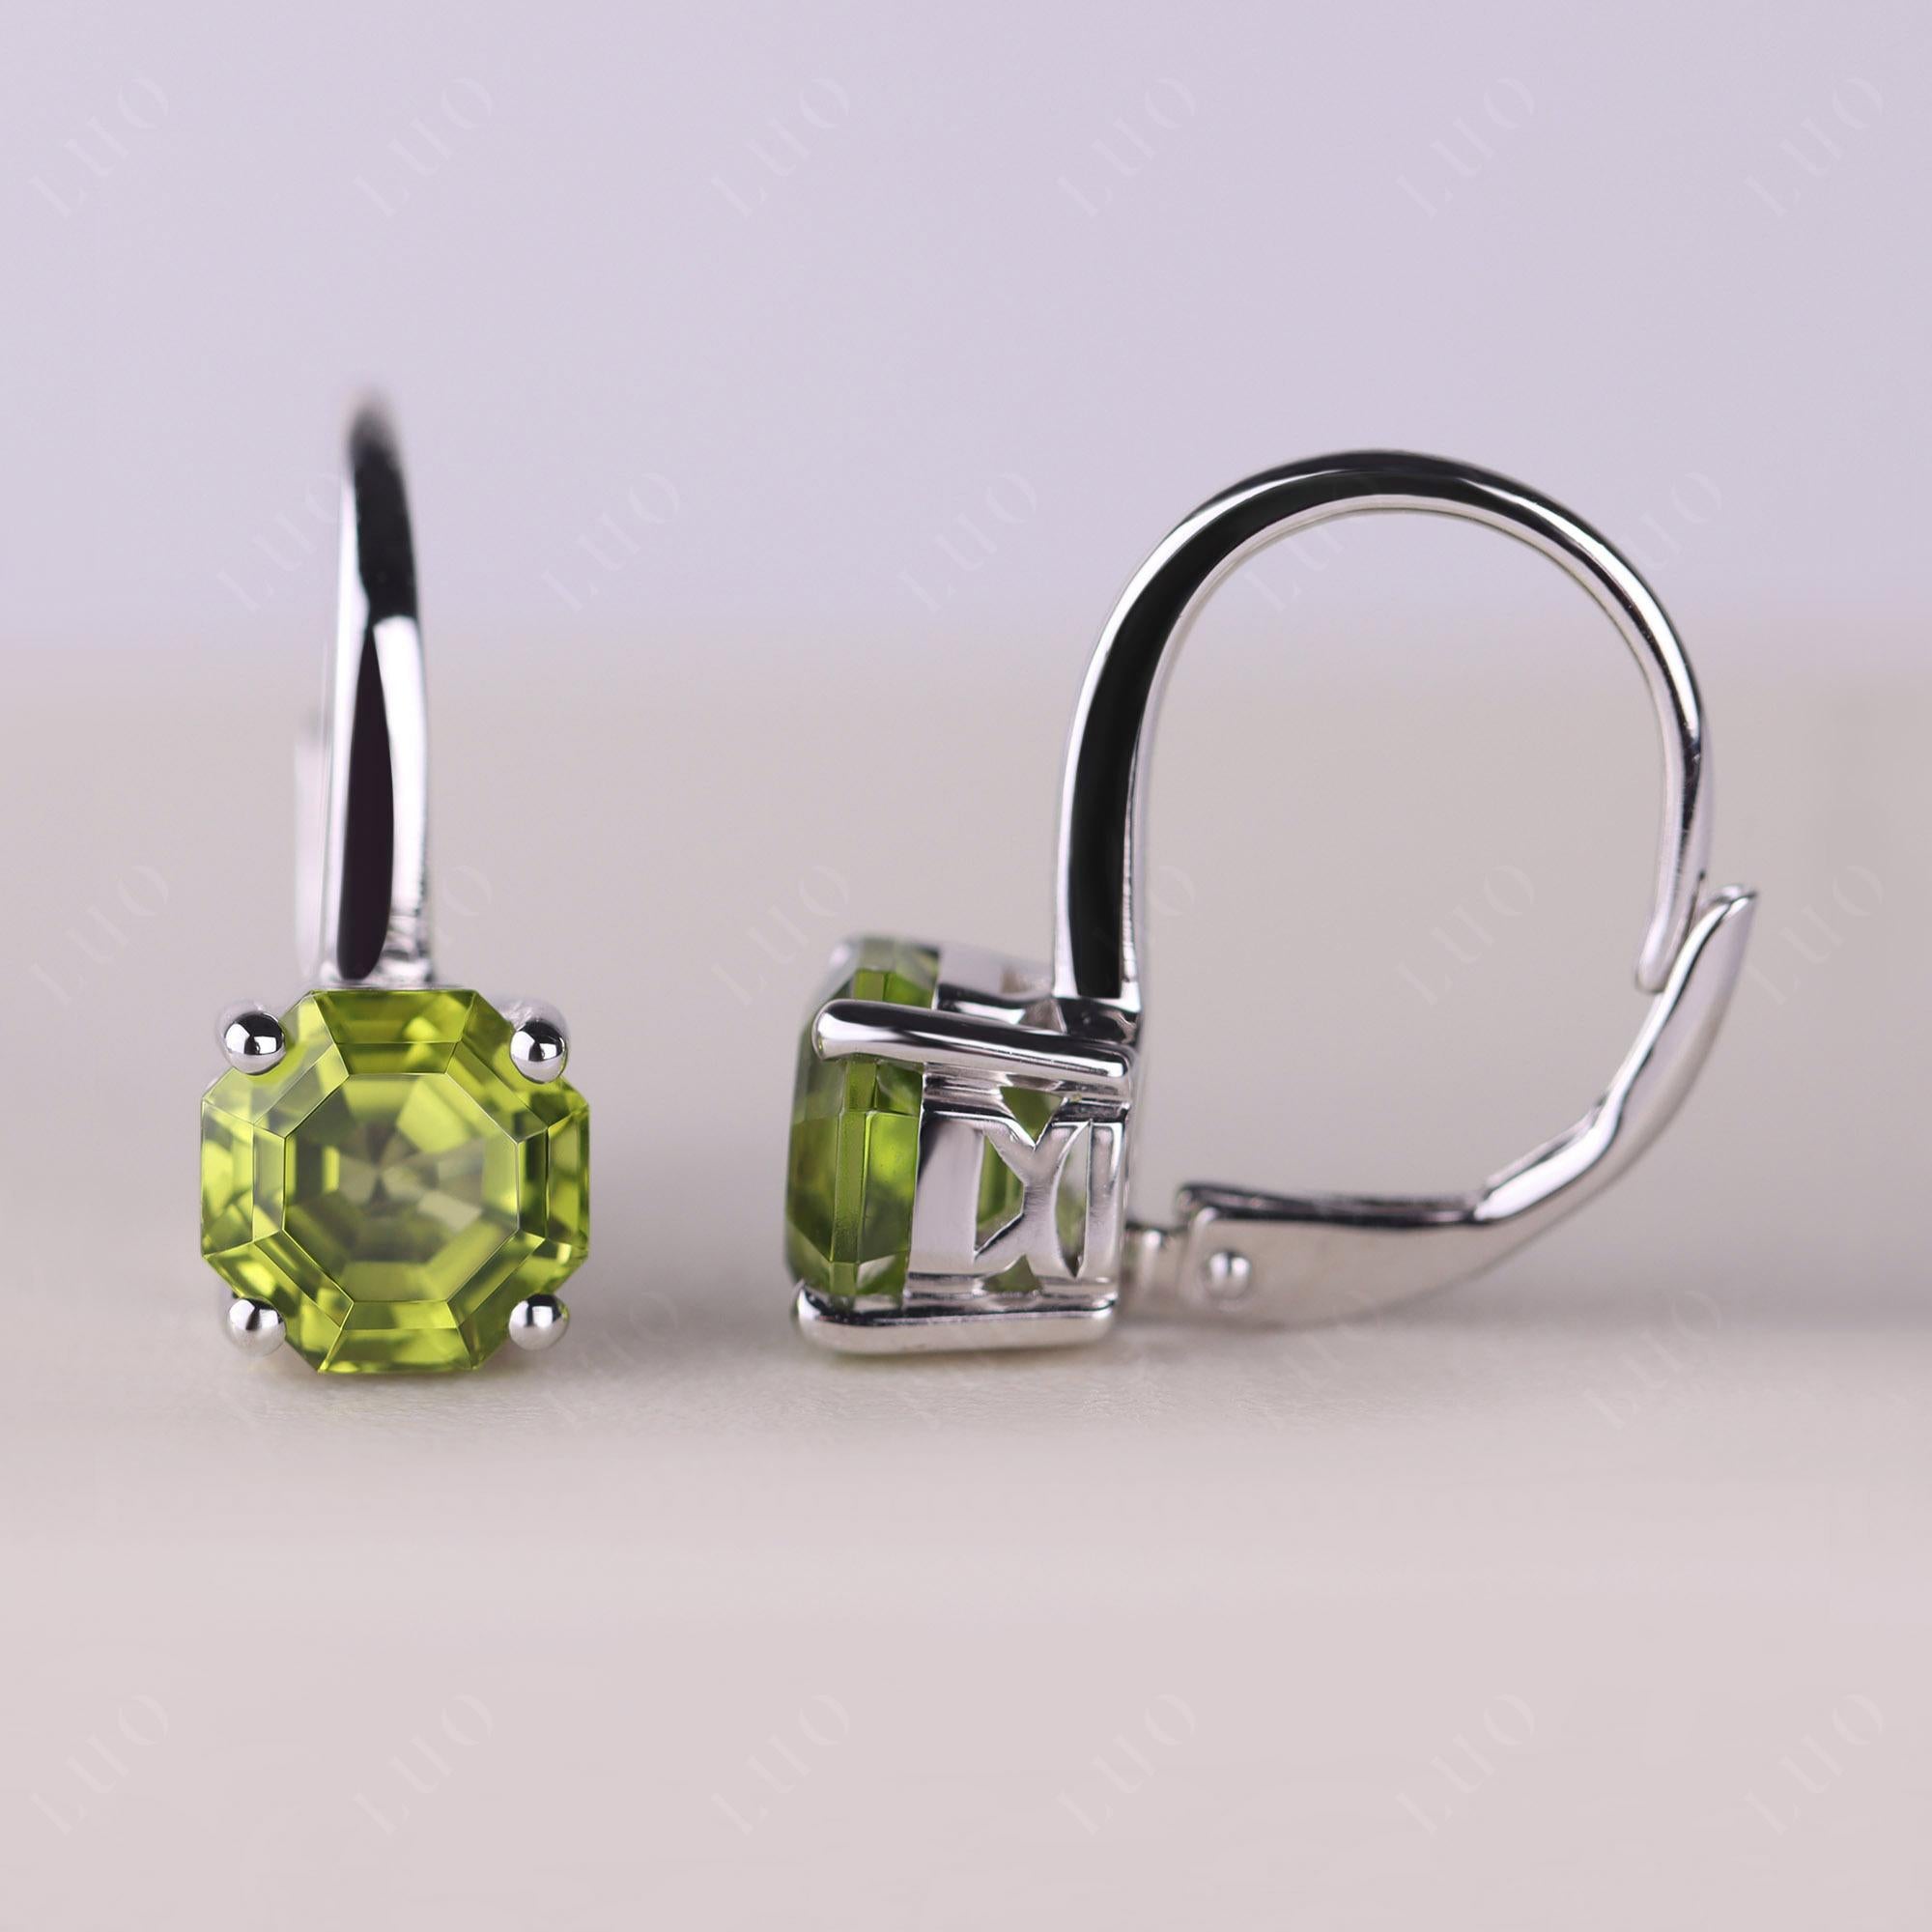 Octagon Cut Peridot Leverback Earrings - LUO Jewelry